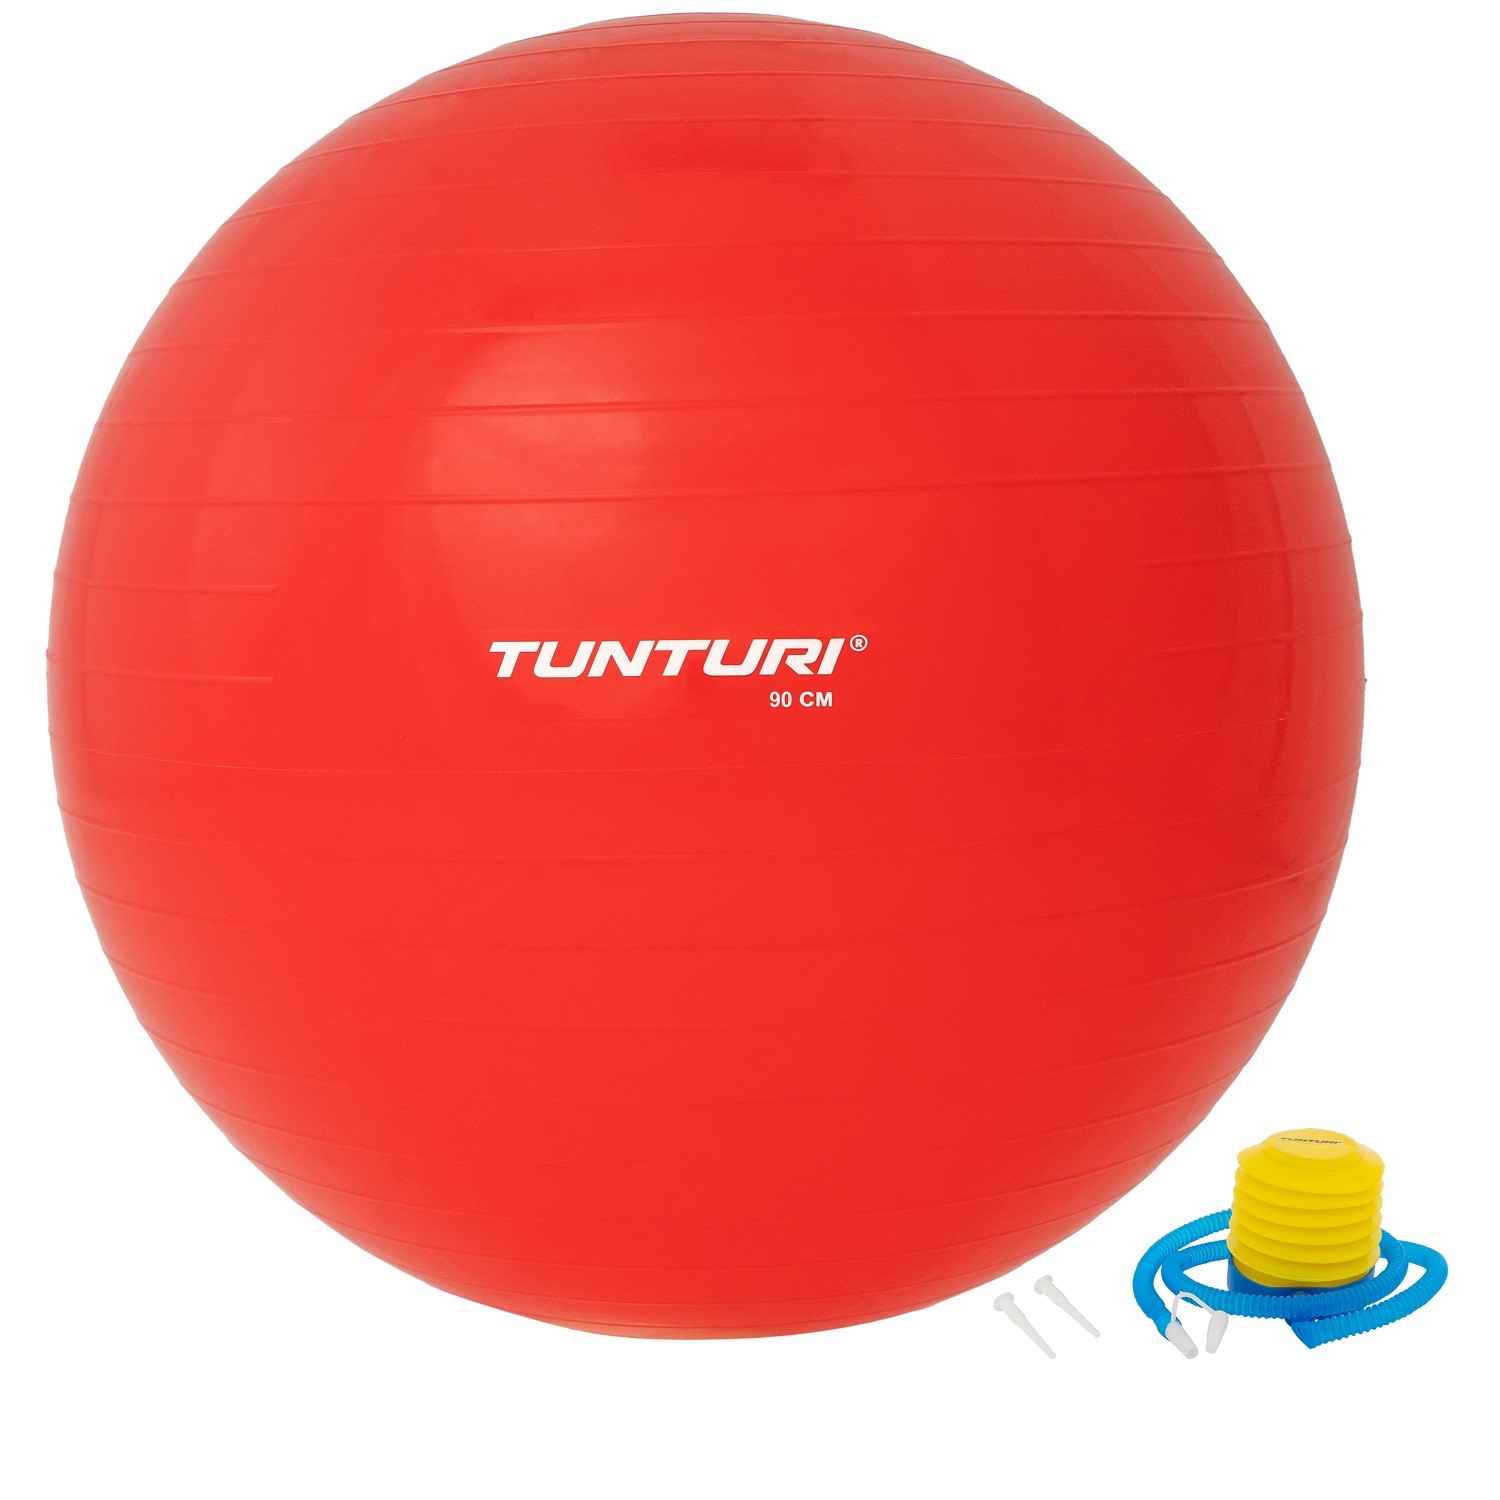 Slaapzaal Inspiratie spijsvertering Tunturi Fitnessbal Gymbal Rood - 90 cm | Online kopen via  Fitness-webshop.com